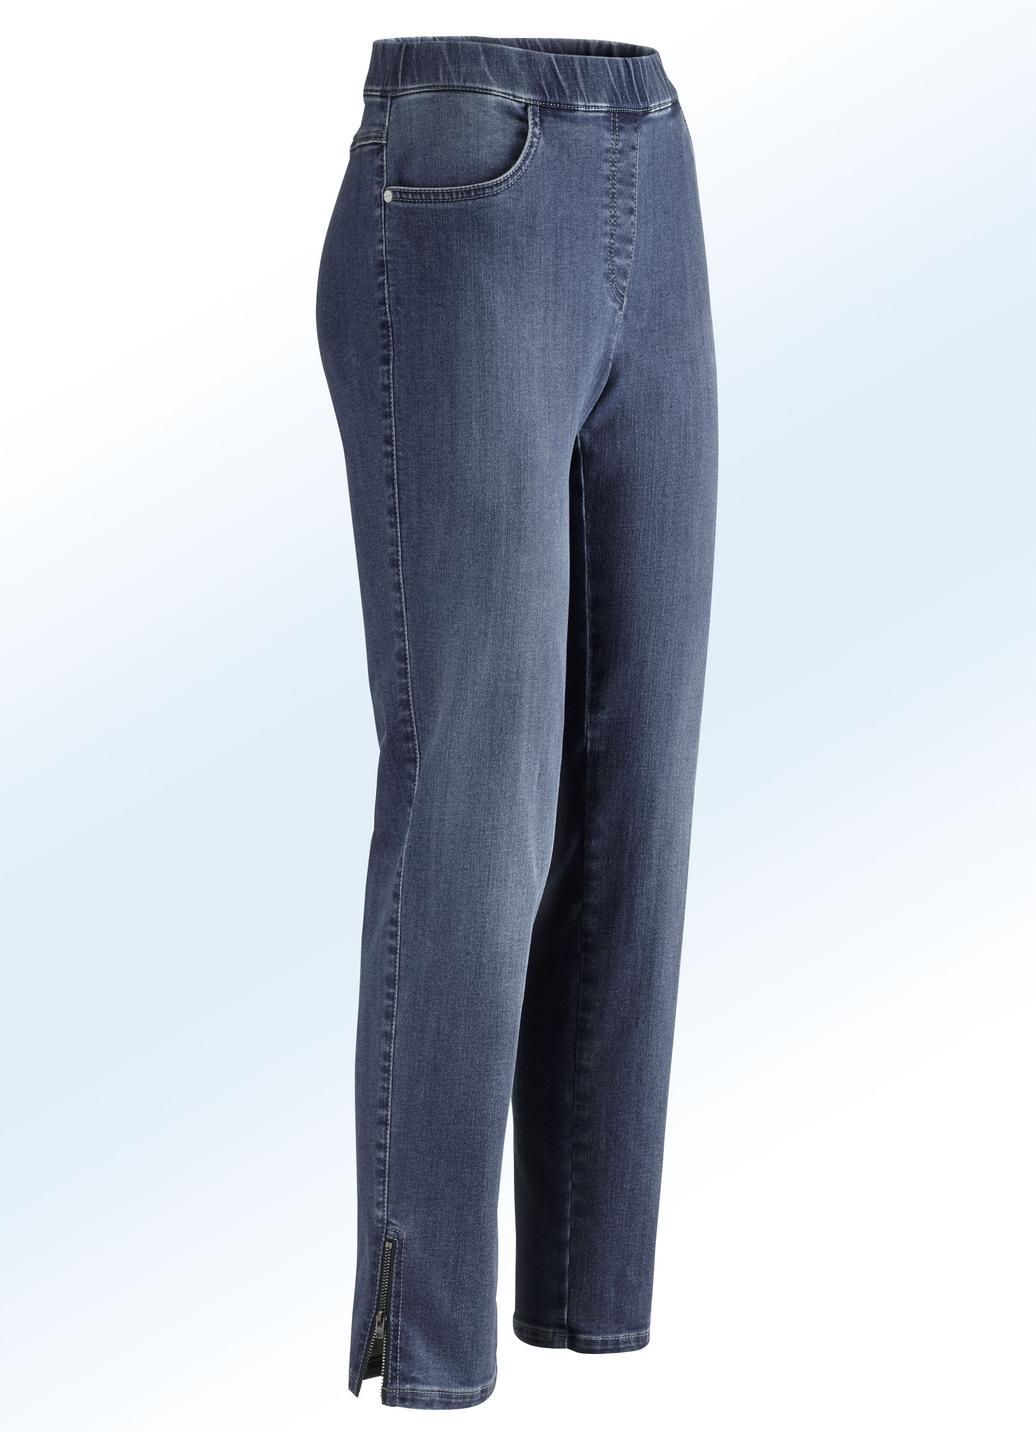 Magic-Jeans mit hohem Stretchanteil, Dunkelblau, Größe 19 von ASCARI